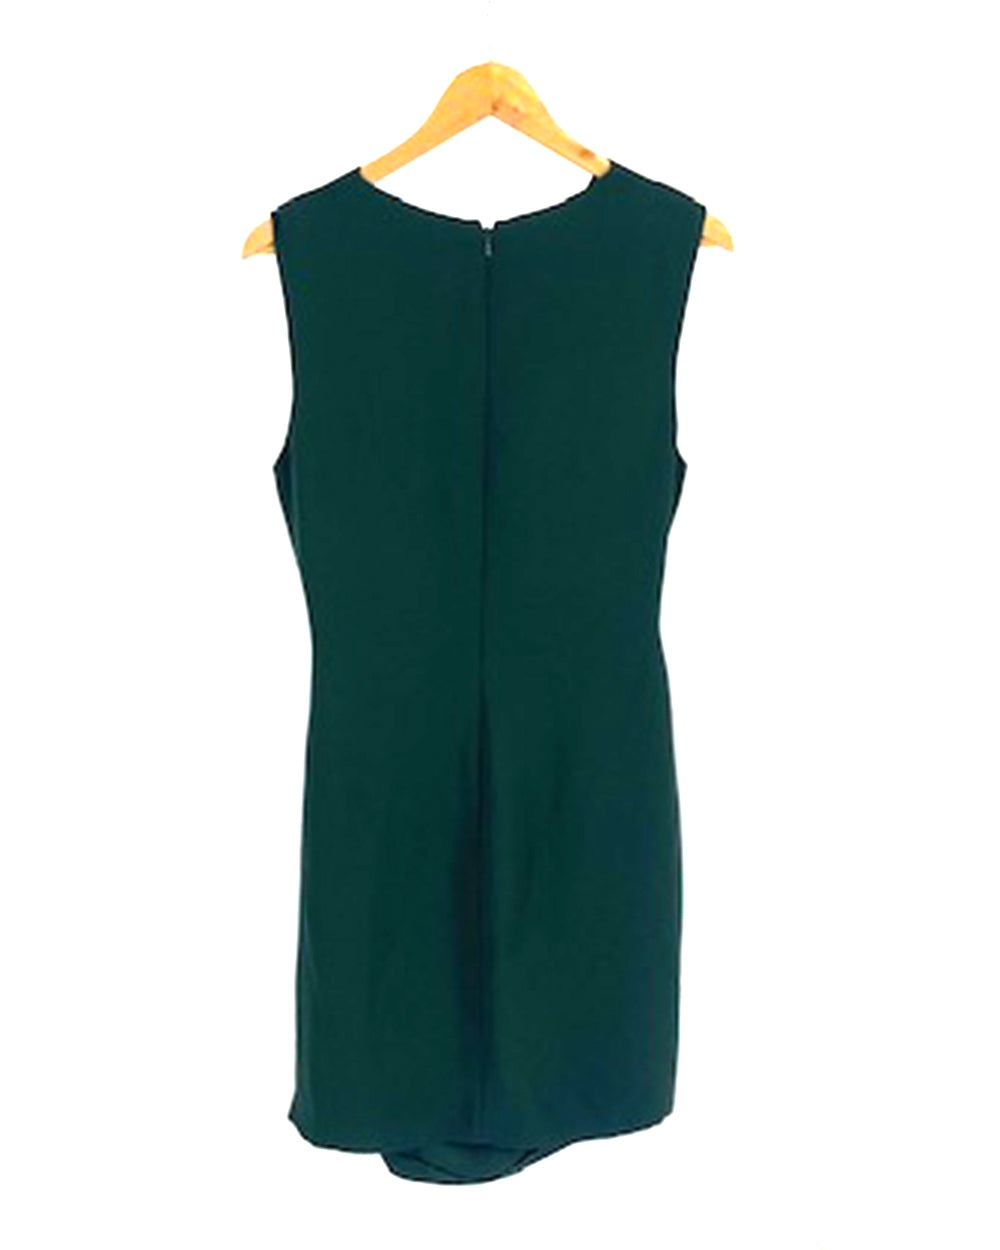 Reiss Green Dress UK 14